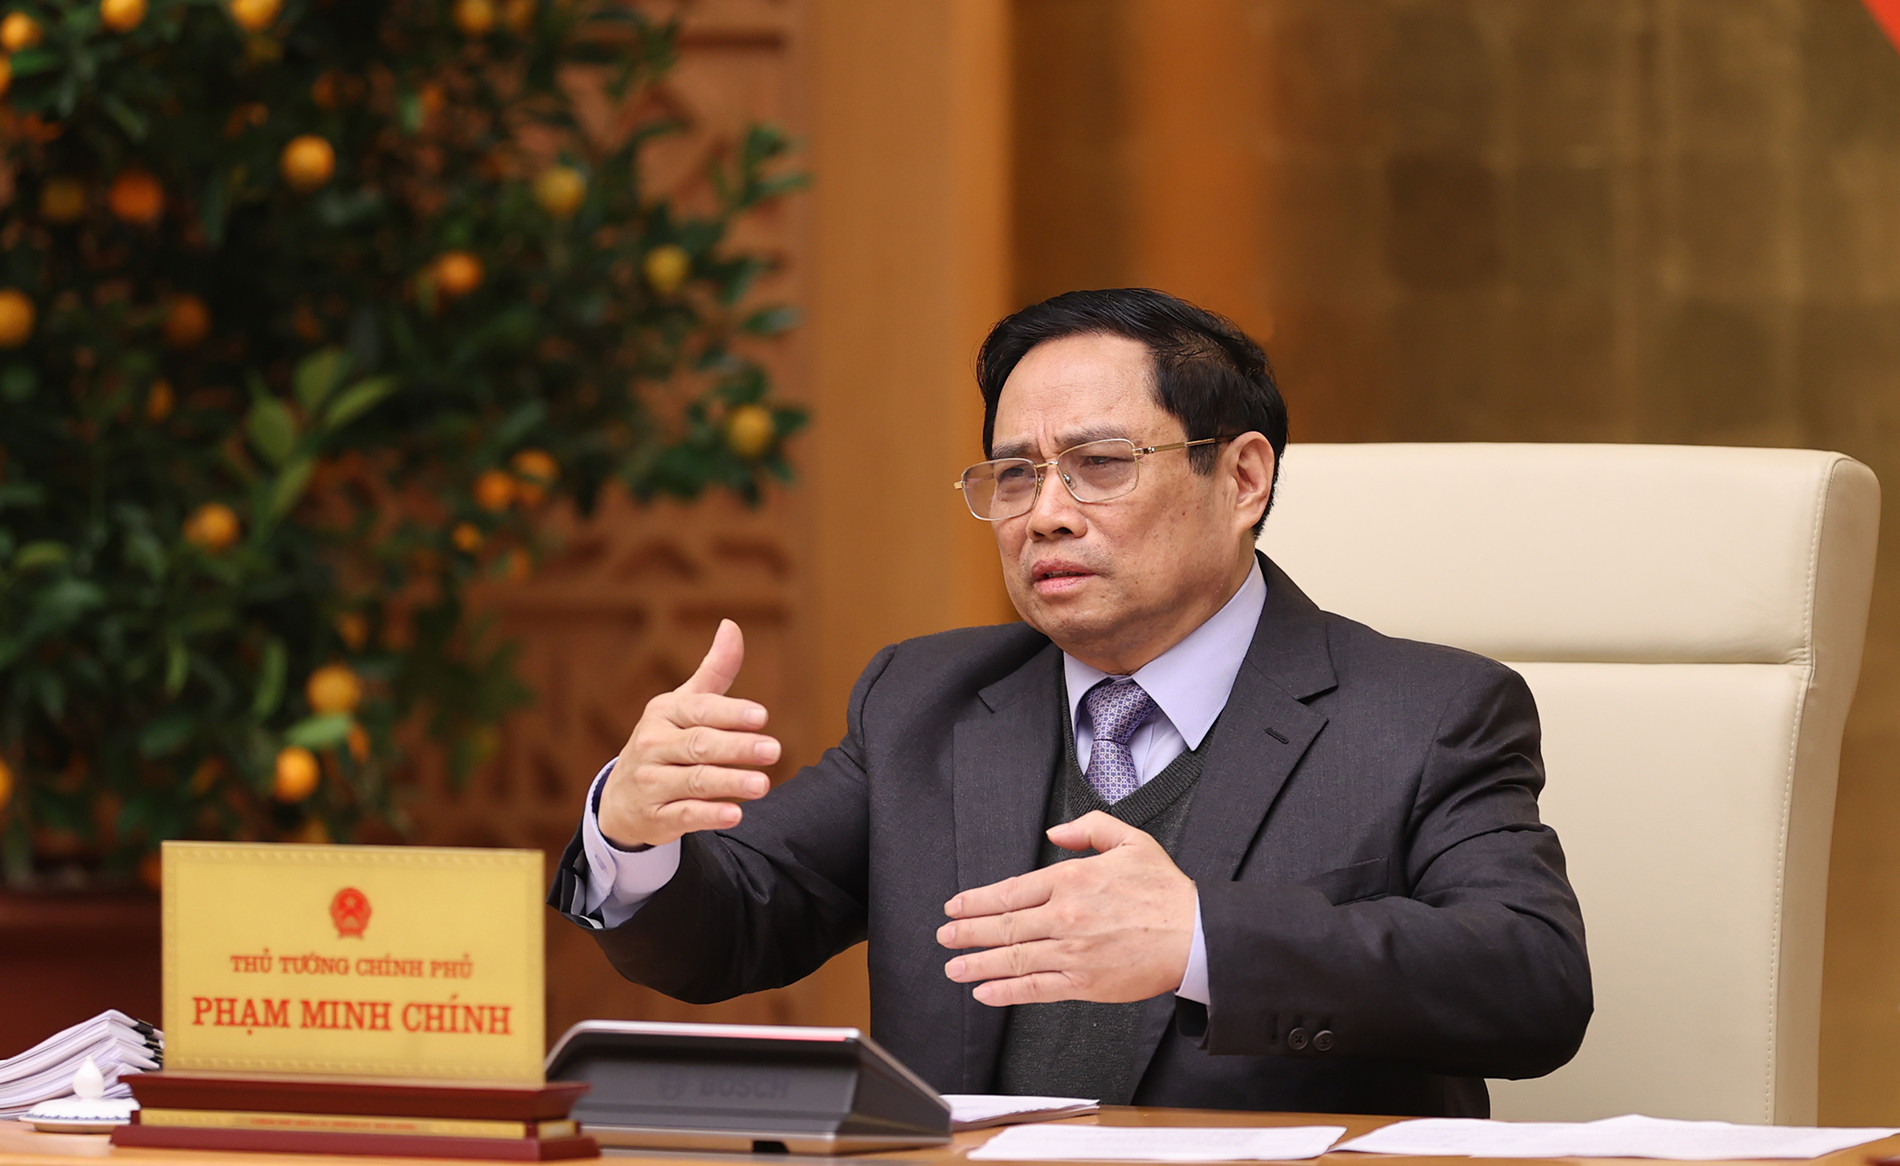 Loạt ảnh: Thủ tướng chủ trì Phiên họp chính phủ chuyên đề về xây dựng pháp luật - Ảnh 5.